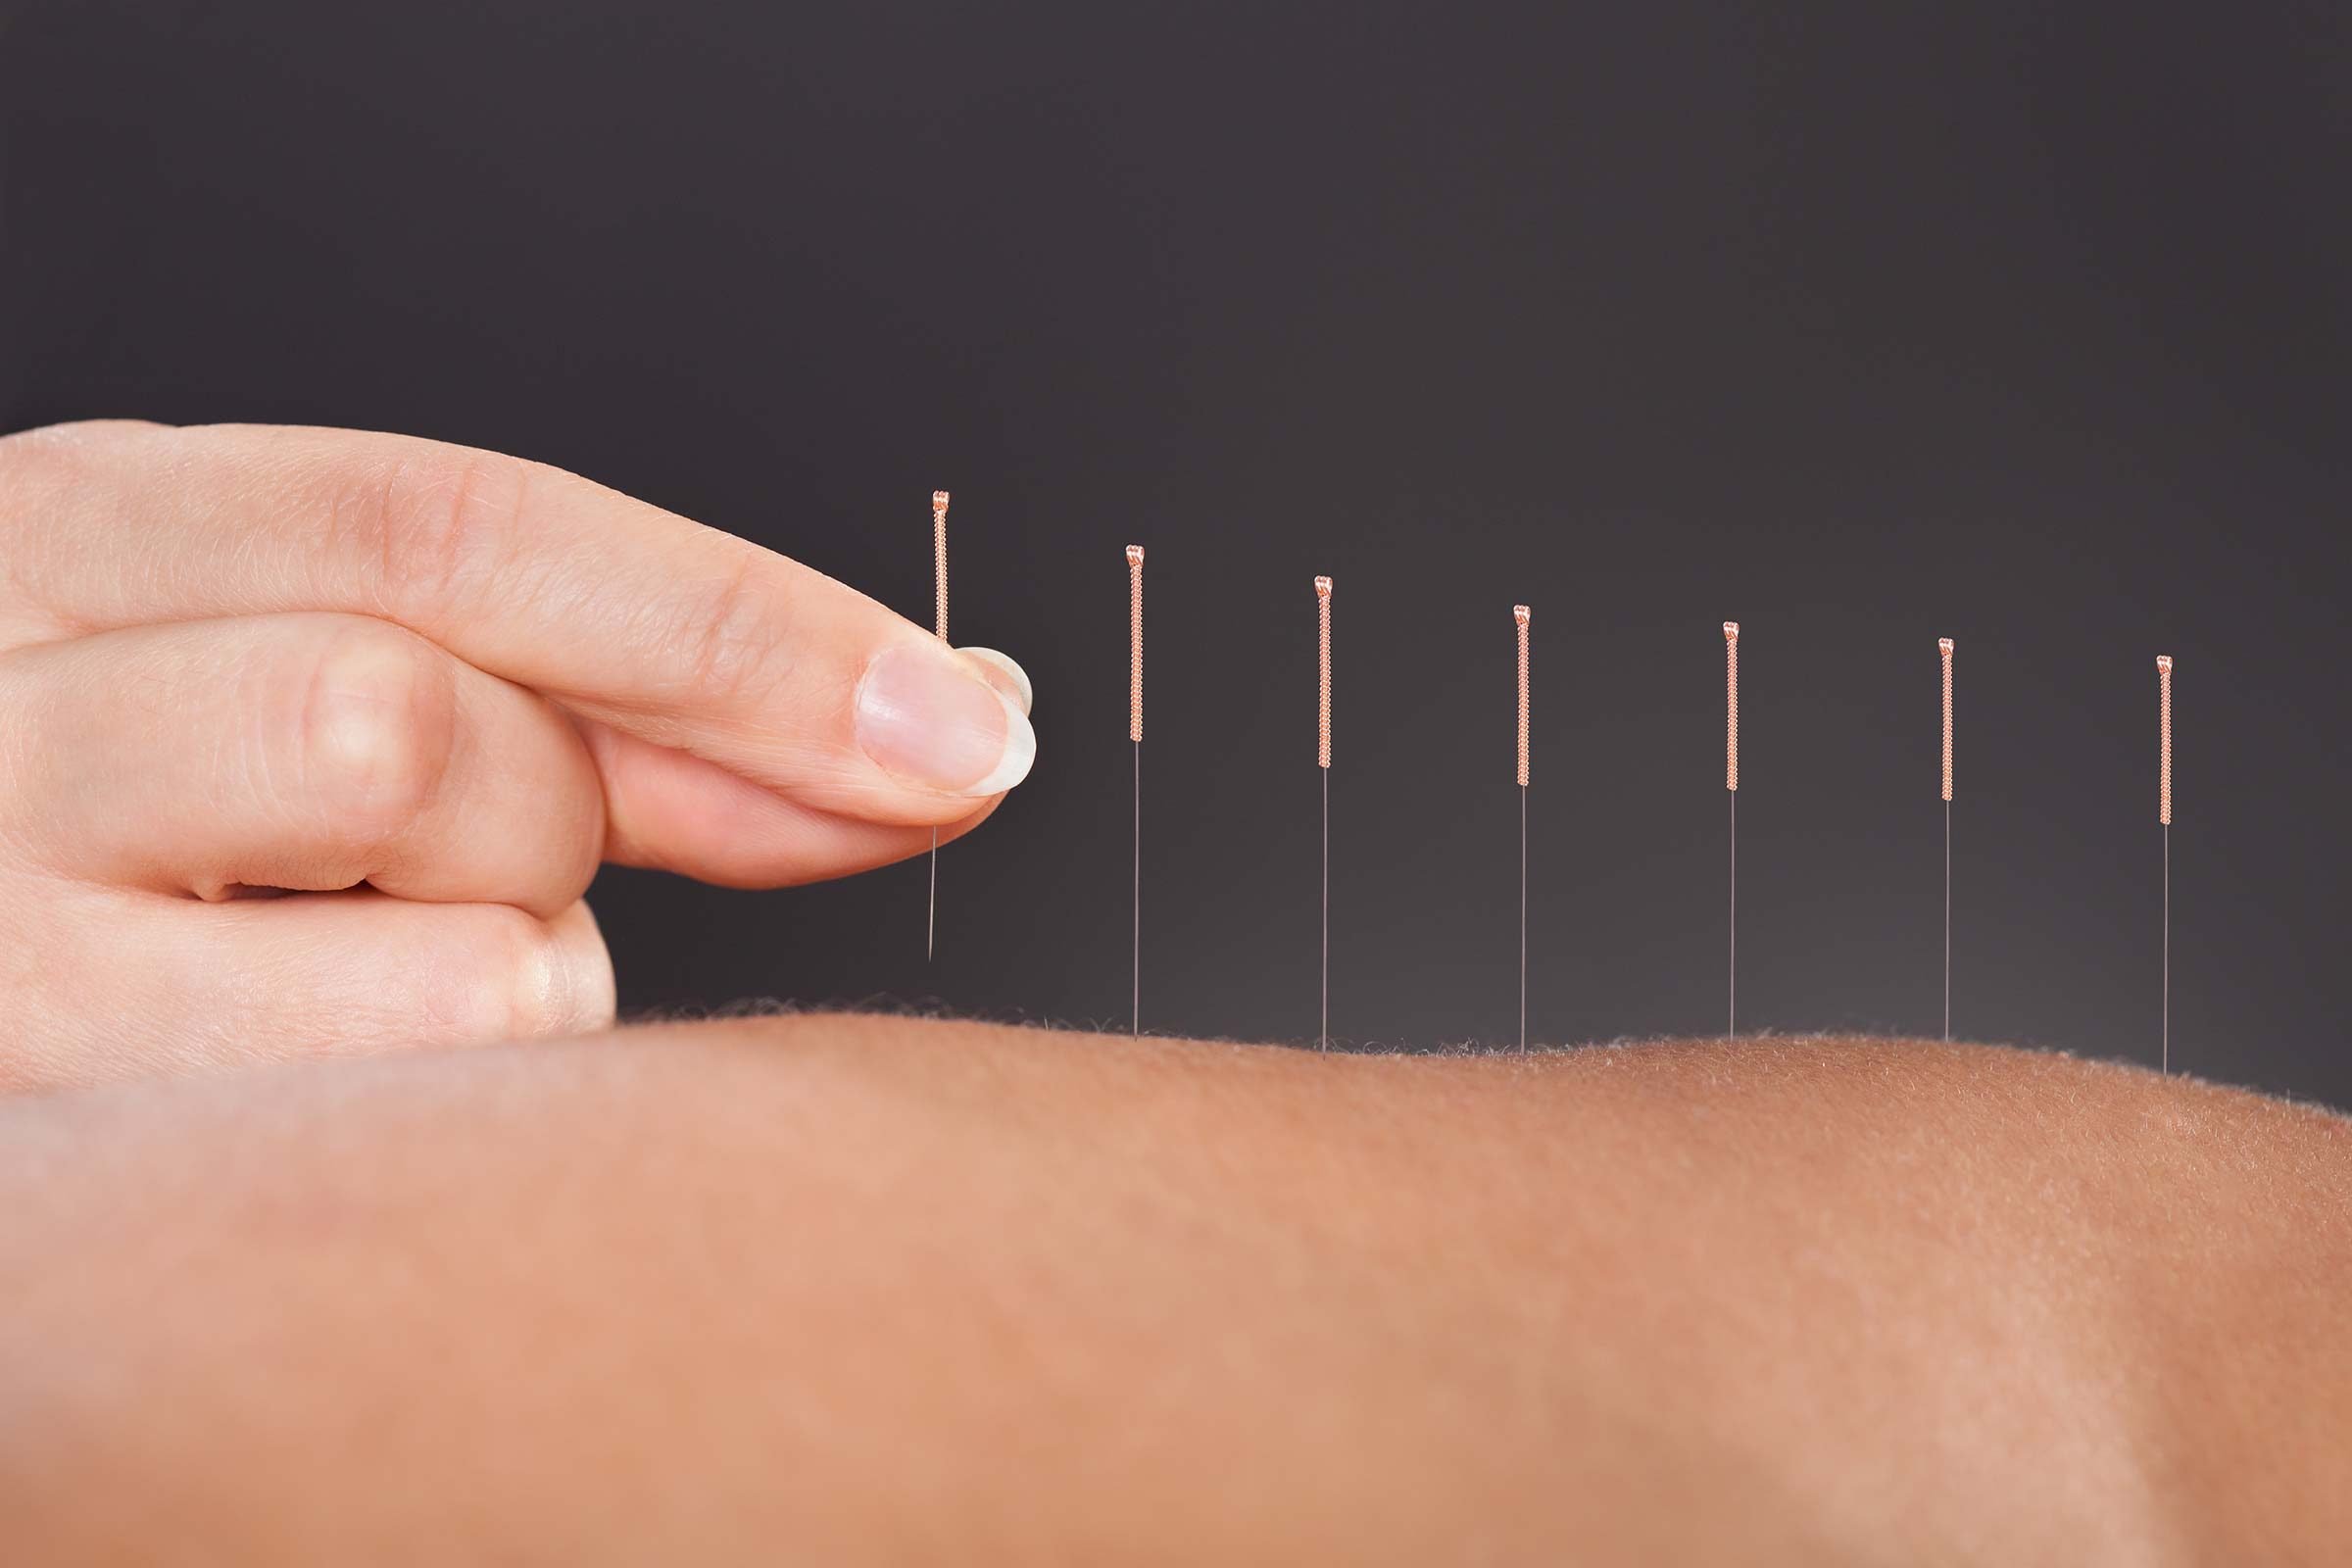 Acupuncture image